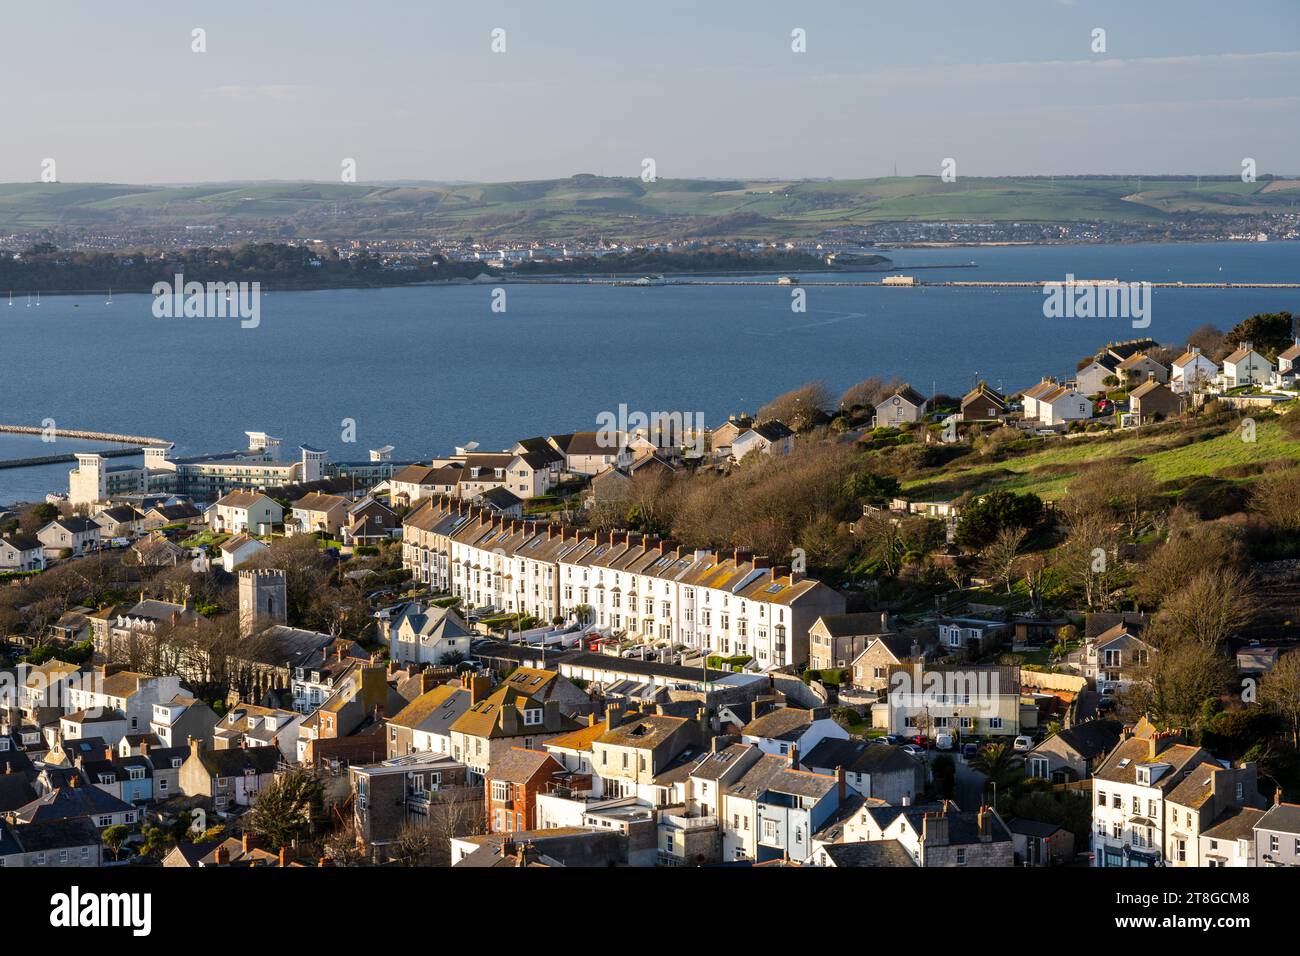 La vue sur la ville de Fortuneswell et le port de Portland à Weymouth et les collines de South Dorset Downs. Banque D'Images